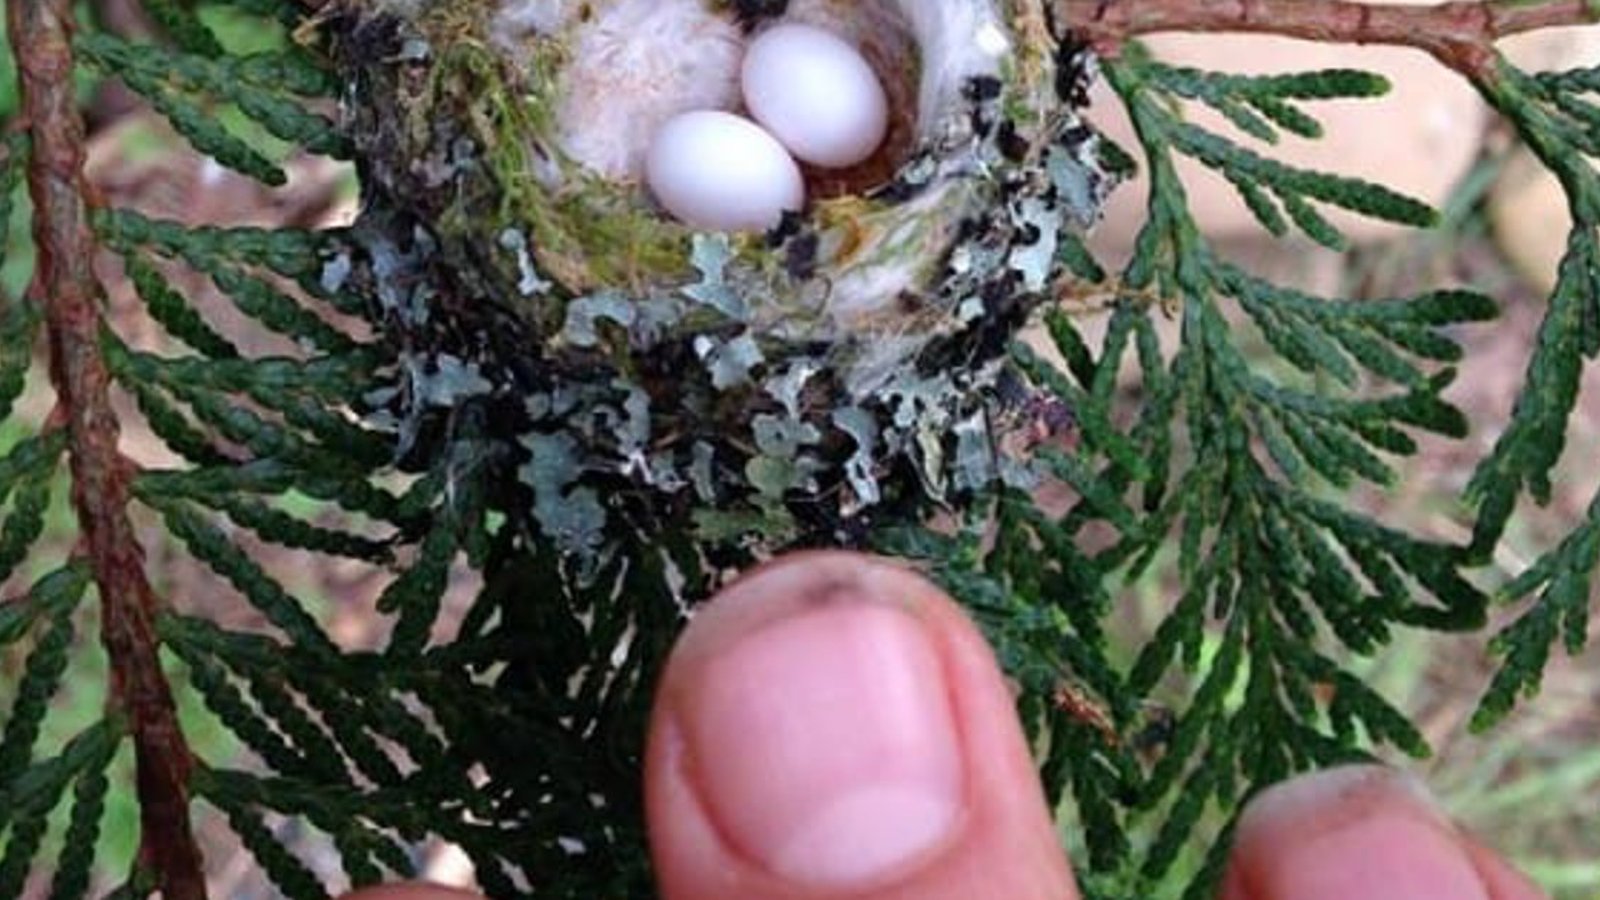 Les experts supplient tout le monde de vérifier si des œufs minuscules se trouvent dans votre jardin, avant d'émonder ce printemps! 